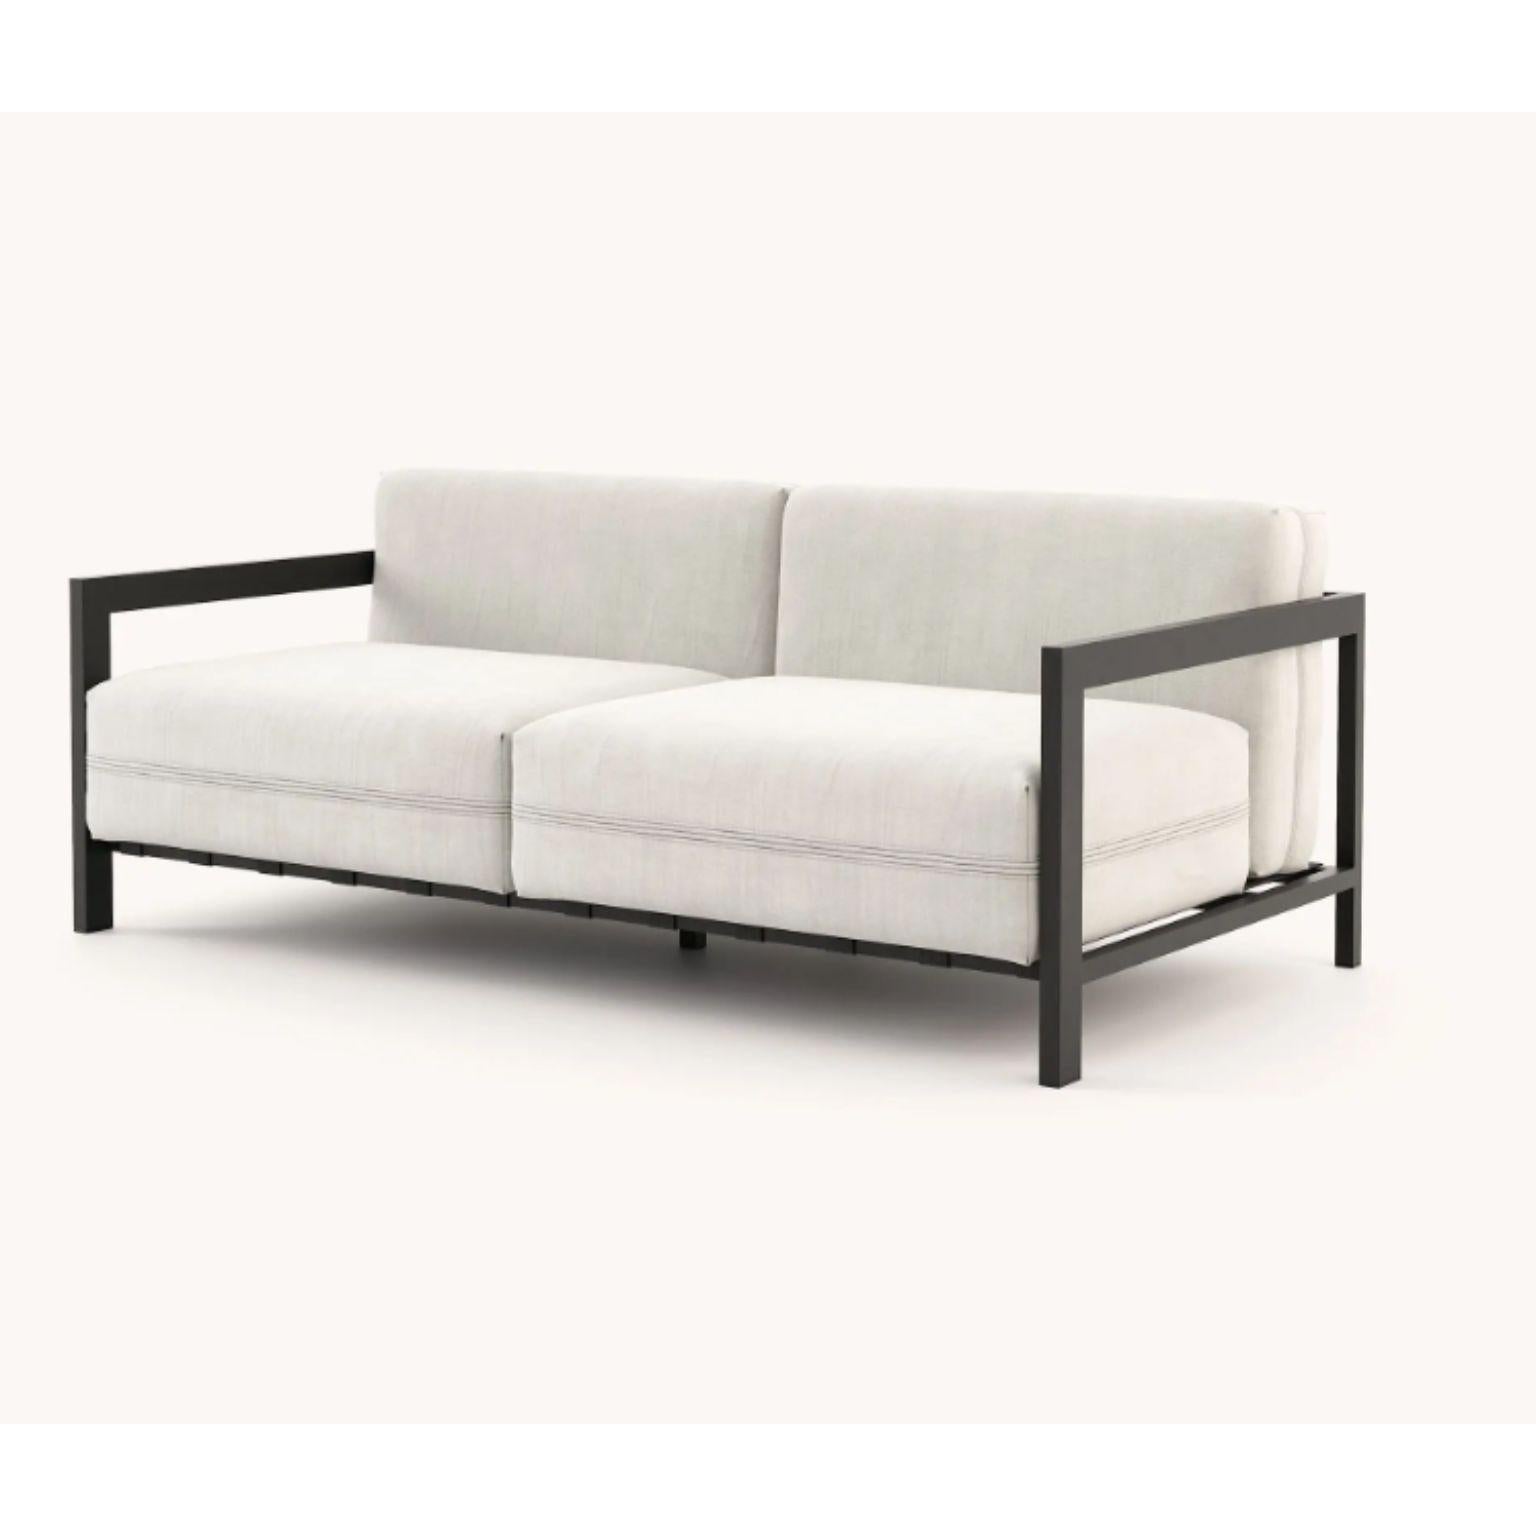 Bondi 2-sitziges sofa von Domkapa.
MATERIALIEN: schwarzer texturierter Edelstahl, Faser (Drava Nata).
Abmessungen: B 182 x T 95 x H 72 cm.
Auch in verschiedenen MATERIALEN erhältlich. 

Die klare Ästhetik verleiht dem Bondi Sofa mit oder ohne